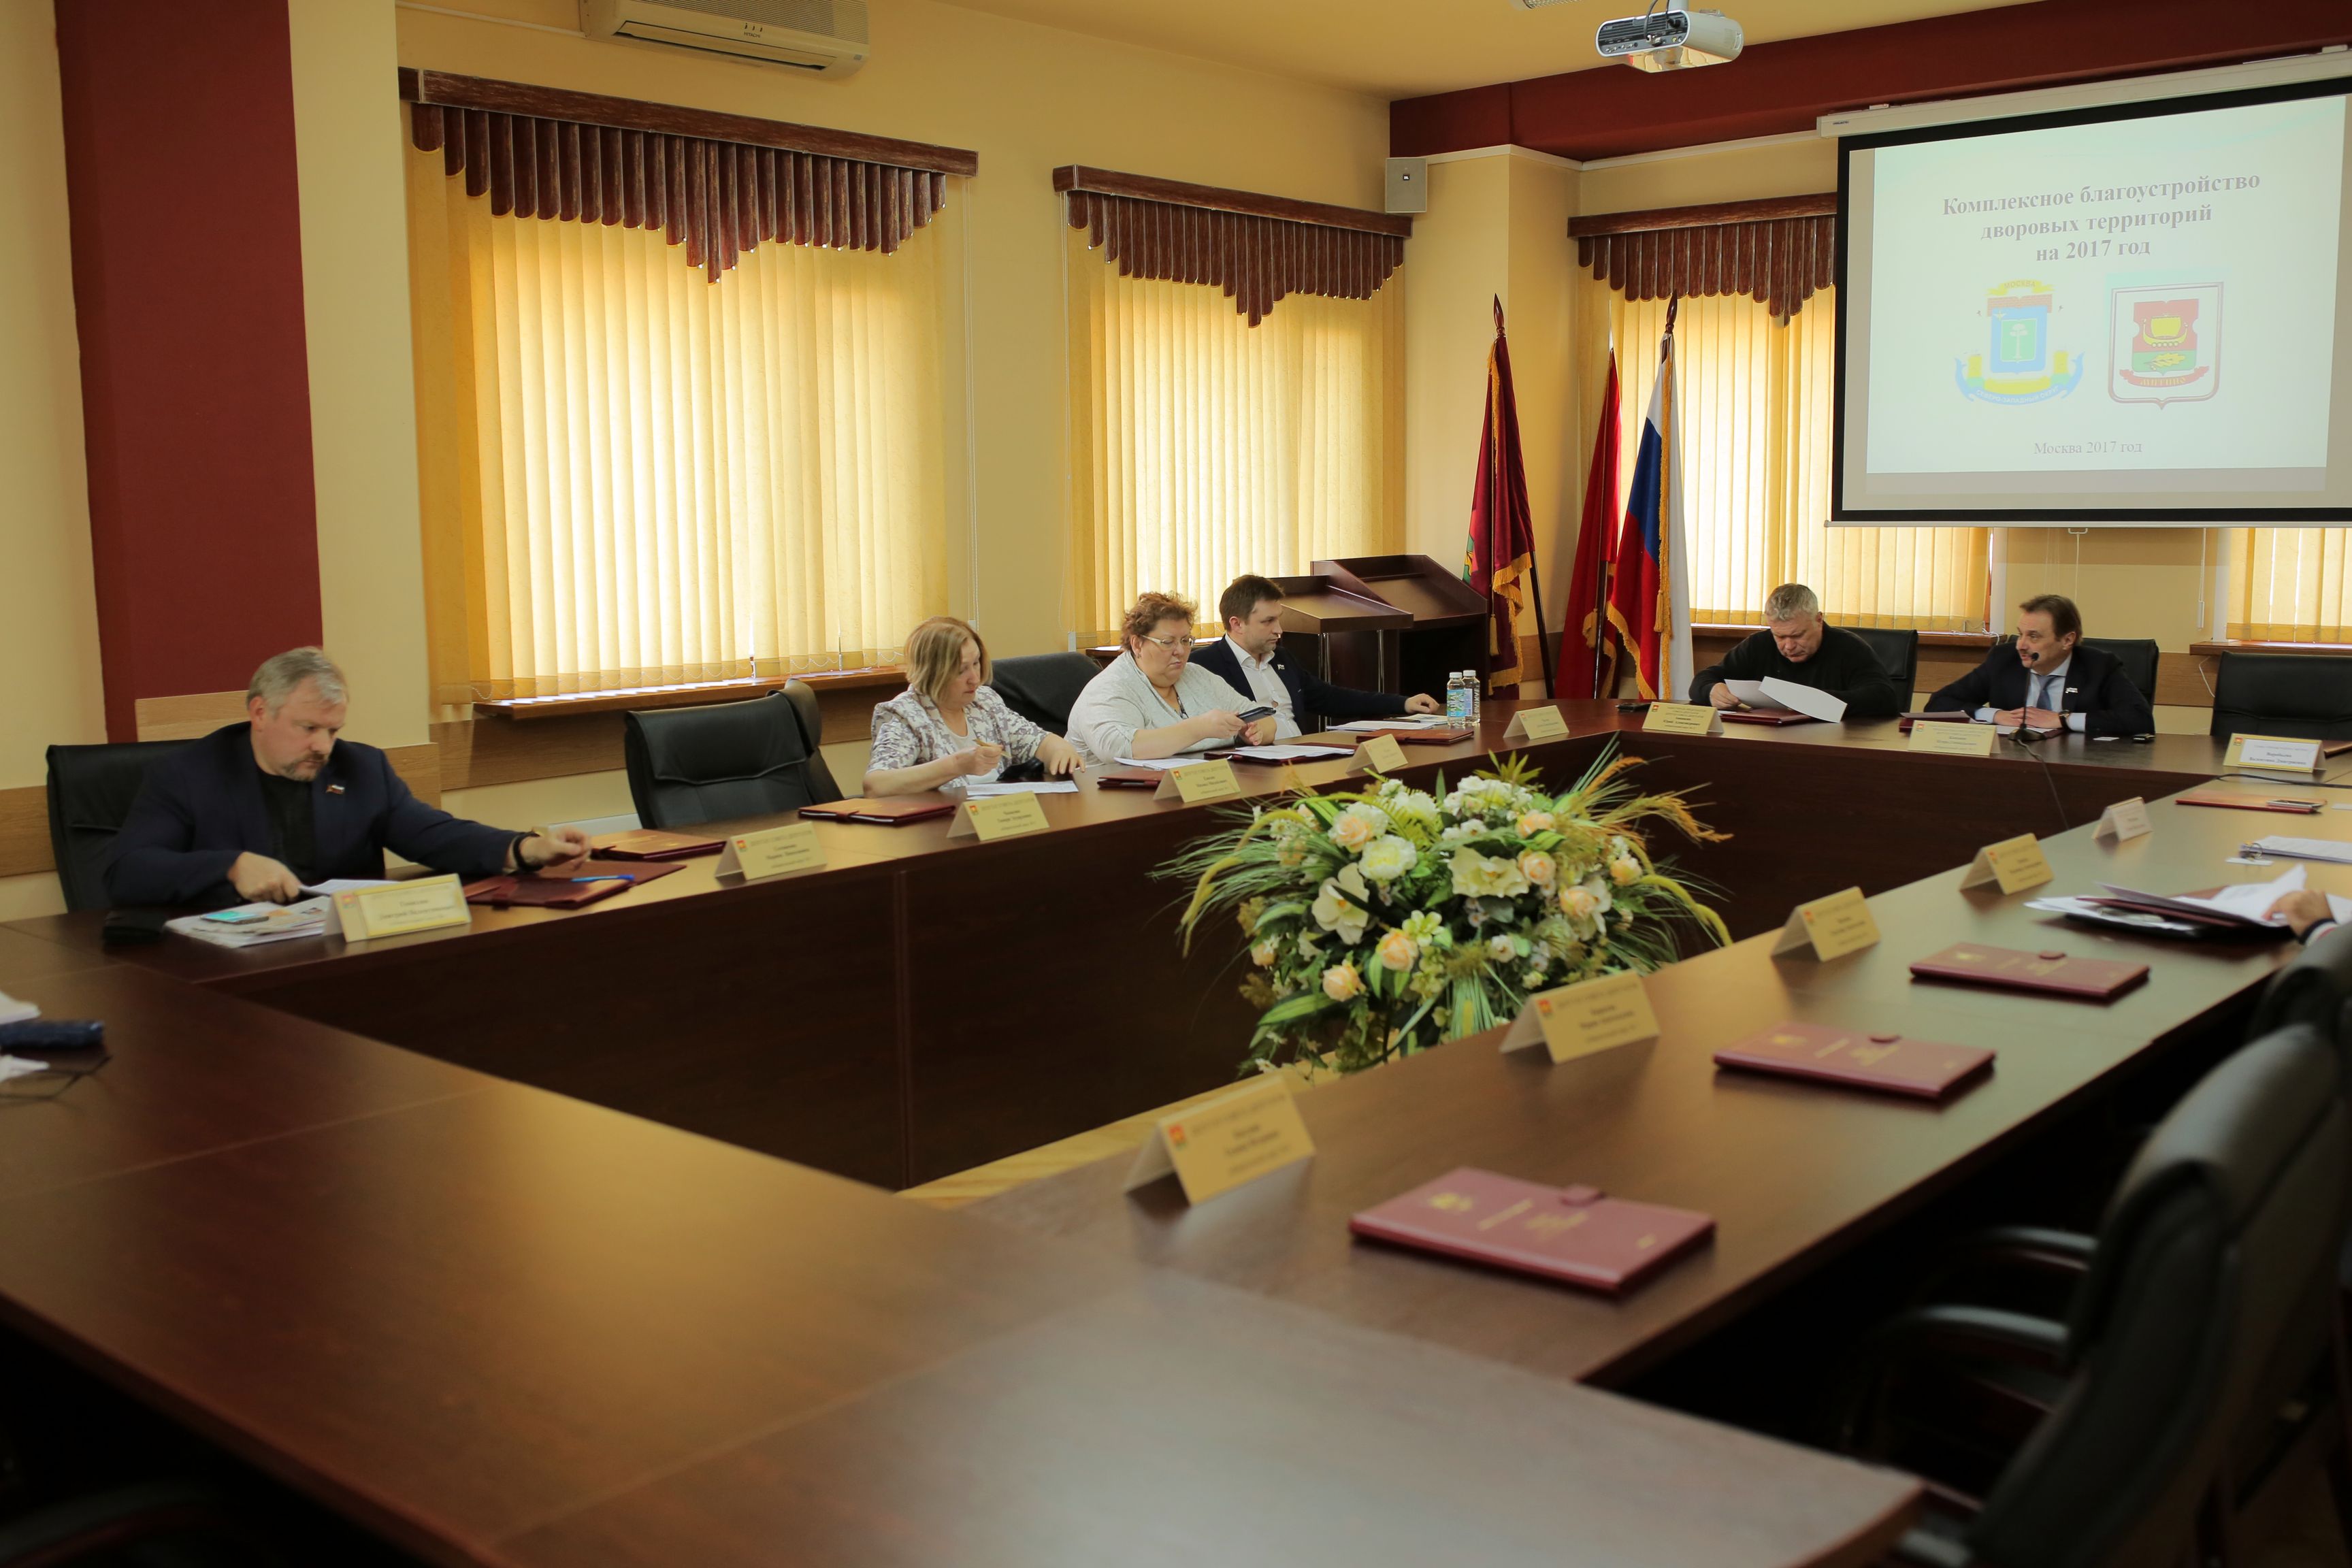 Заседание №4 Совета депутатов муниципального округа Митино от "14" марта 2017 года